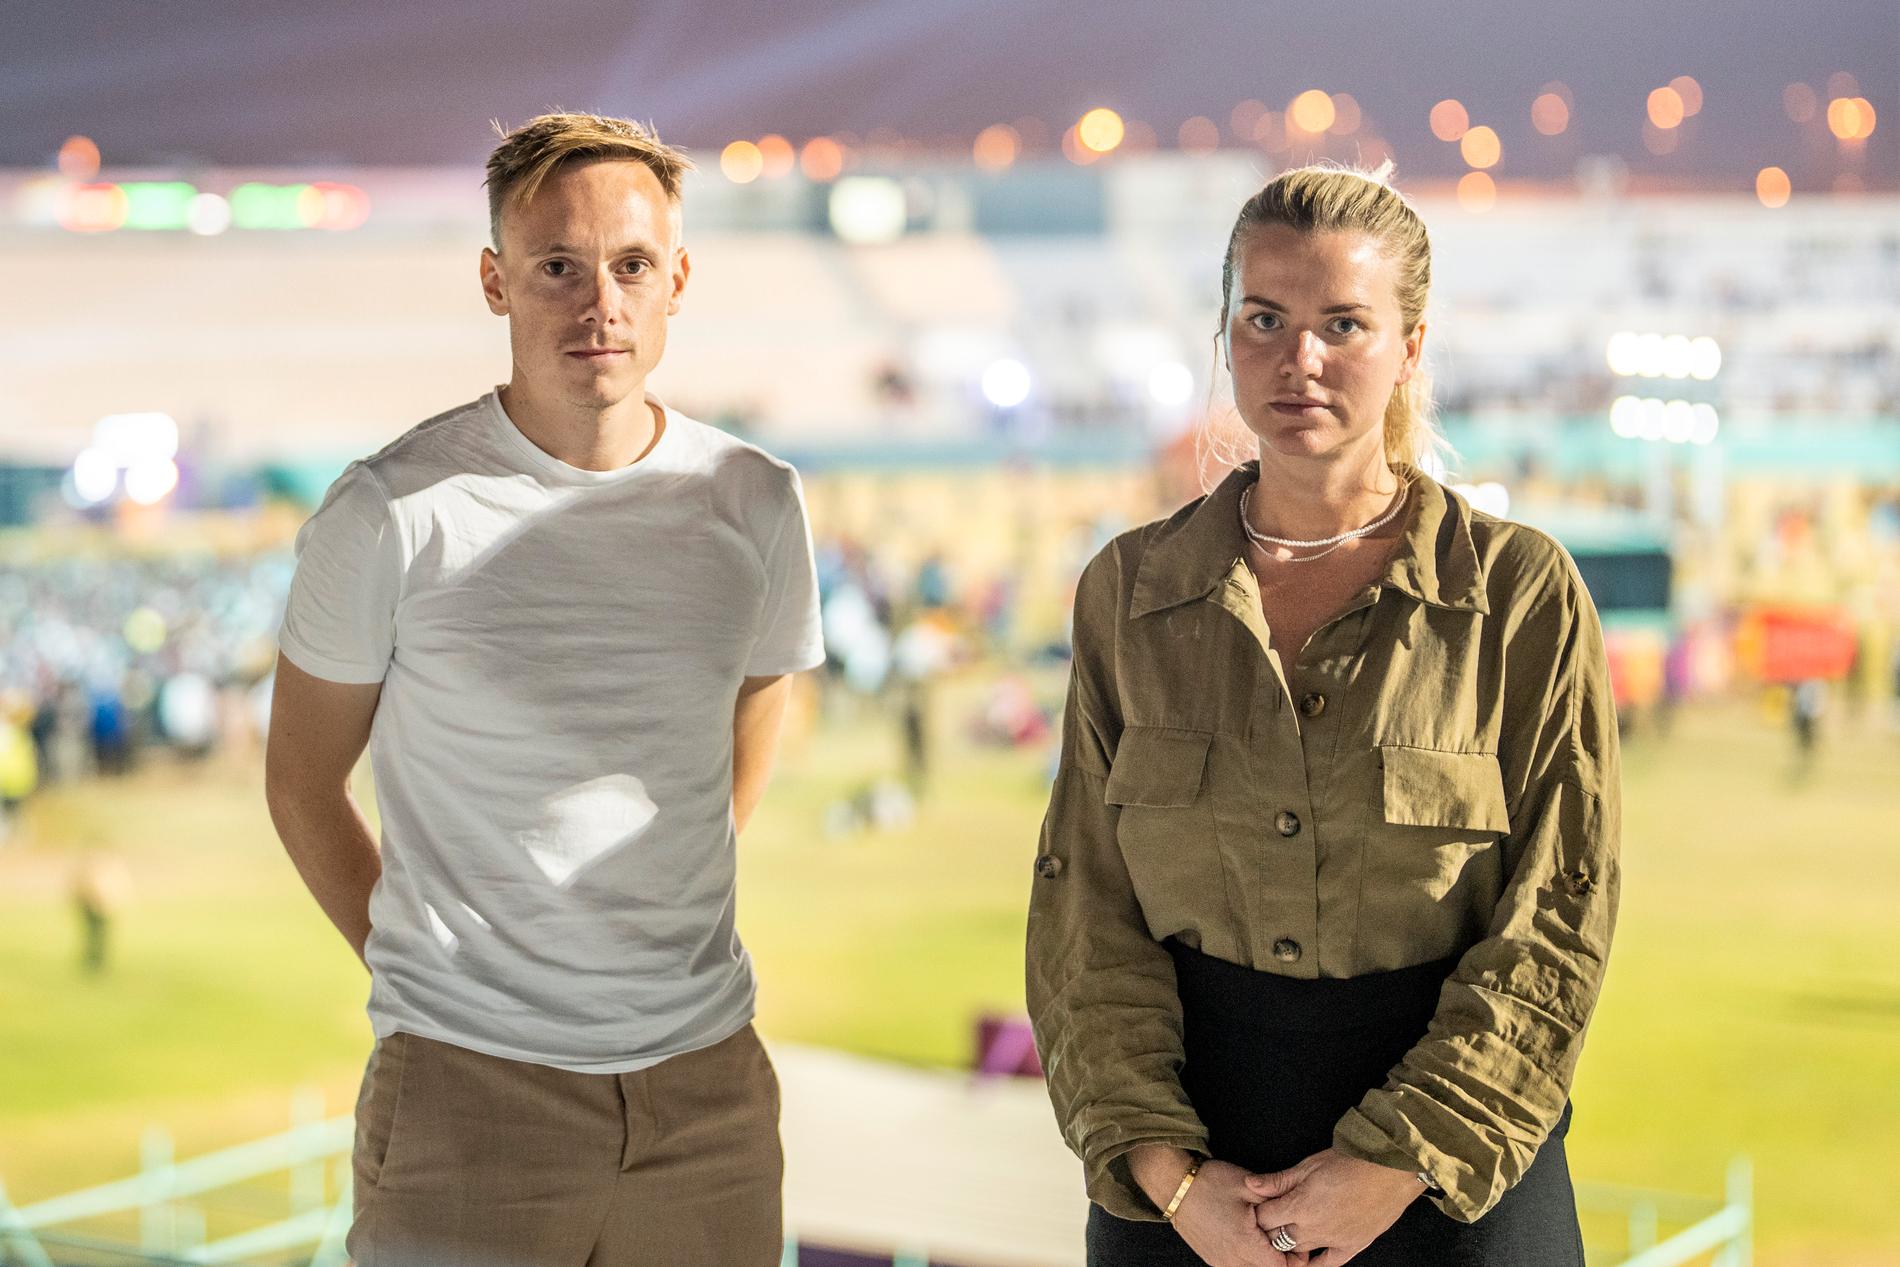 Sportbladets fotograf Pontus Orre och reporter Linn Nordström på plats i Asian town utanför Doha. 